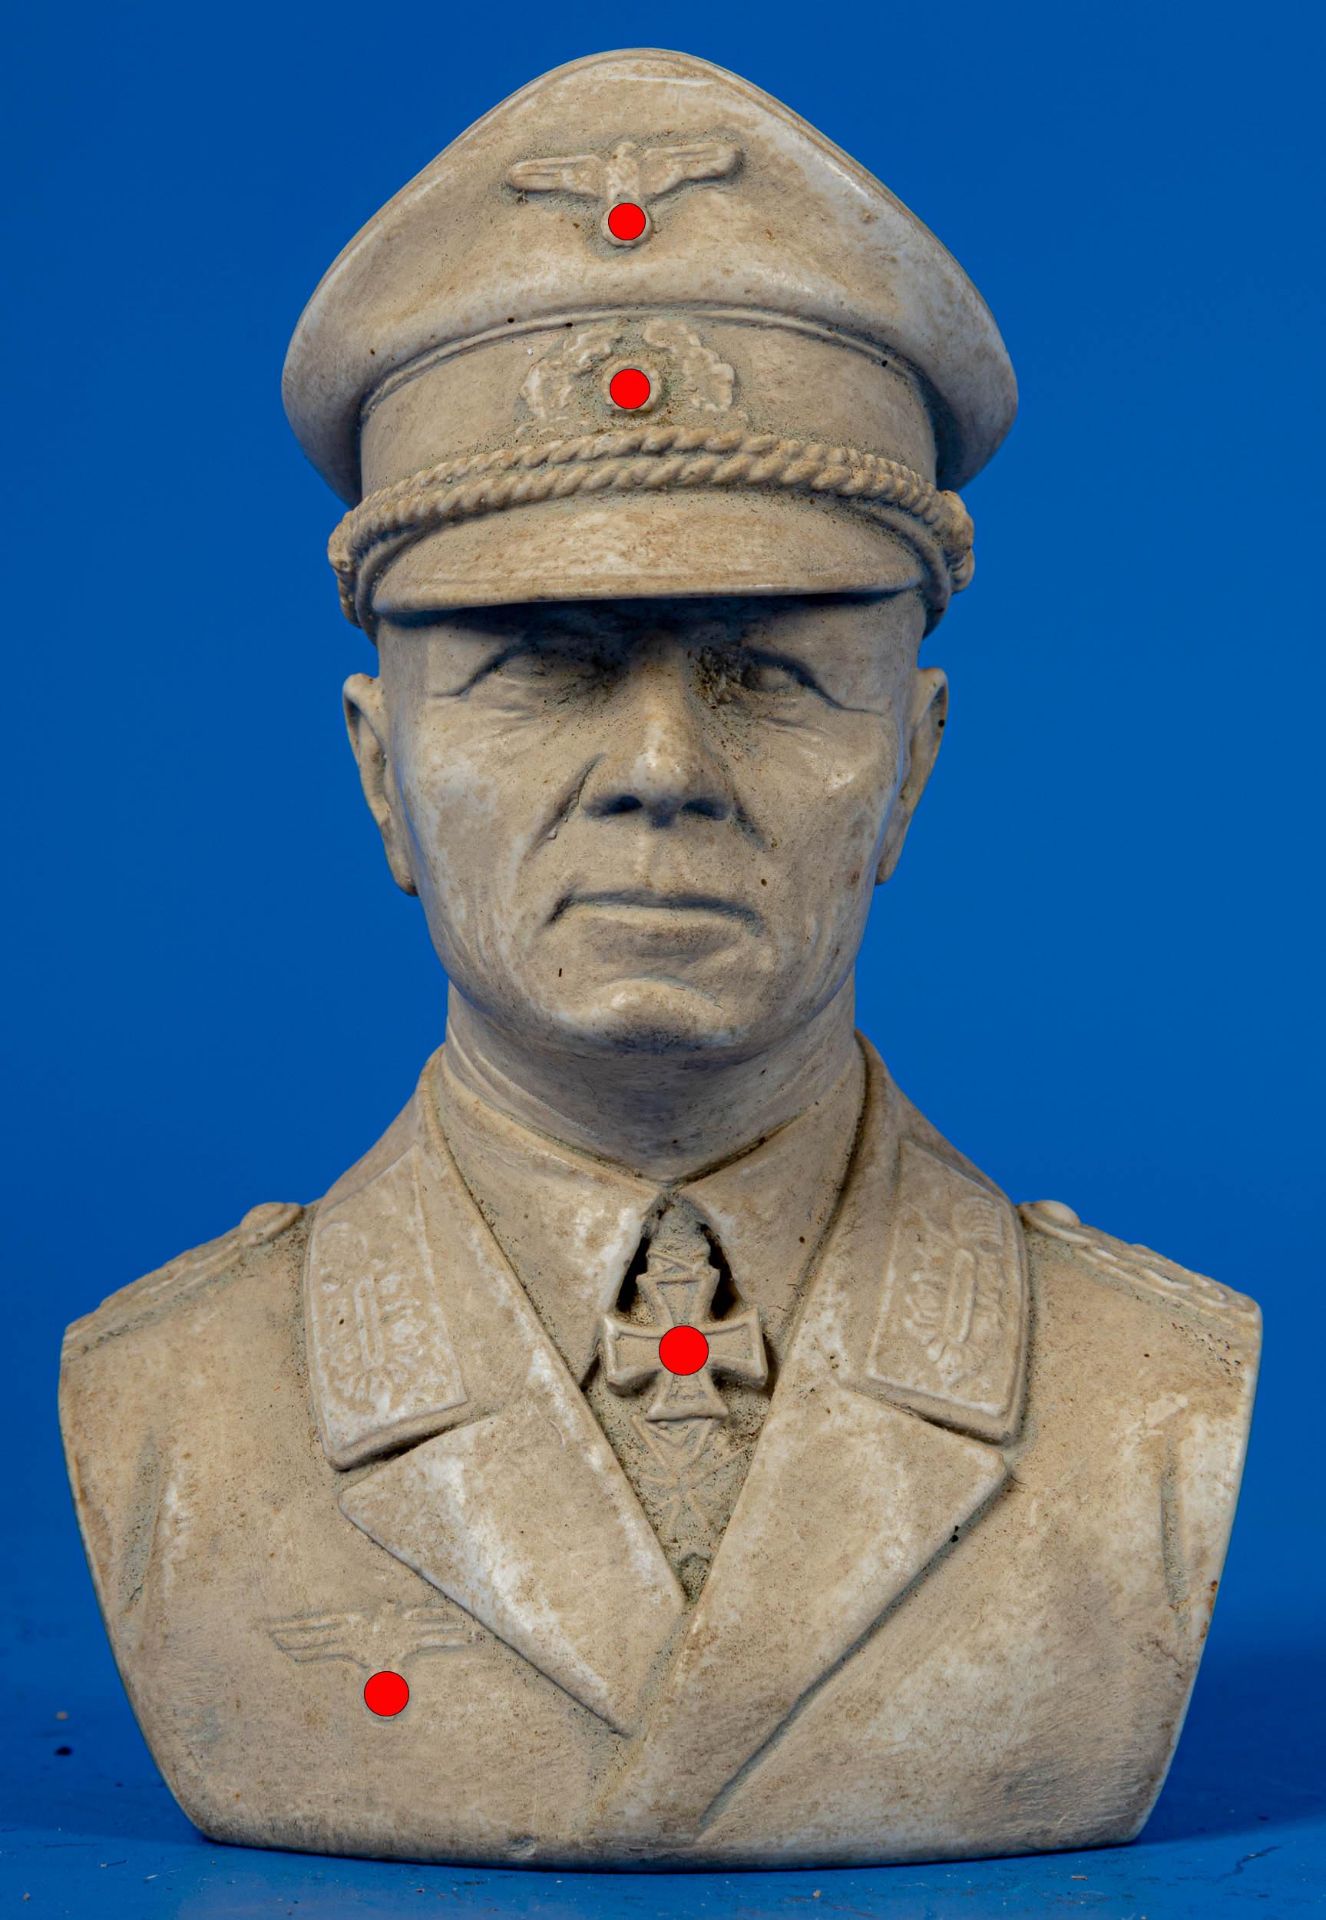 Büste vom "Wüstenfuchs" Erwin Rommel, Masseguss; Höhe ca. 11 cm, rückseitig bez.: Rg 735 sowie ligi